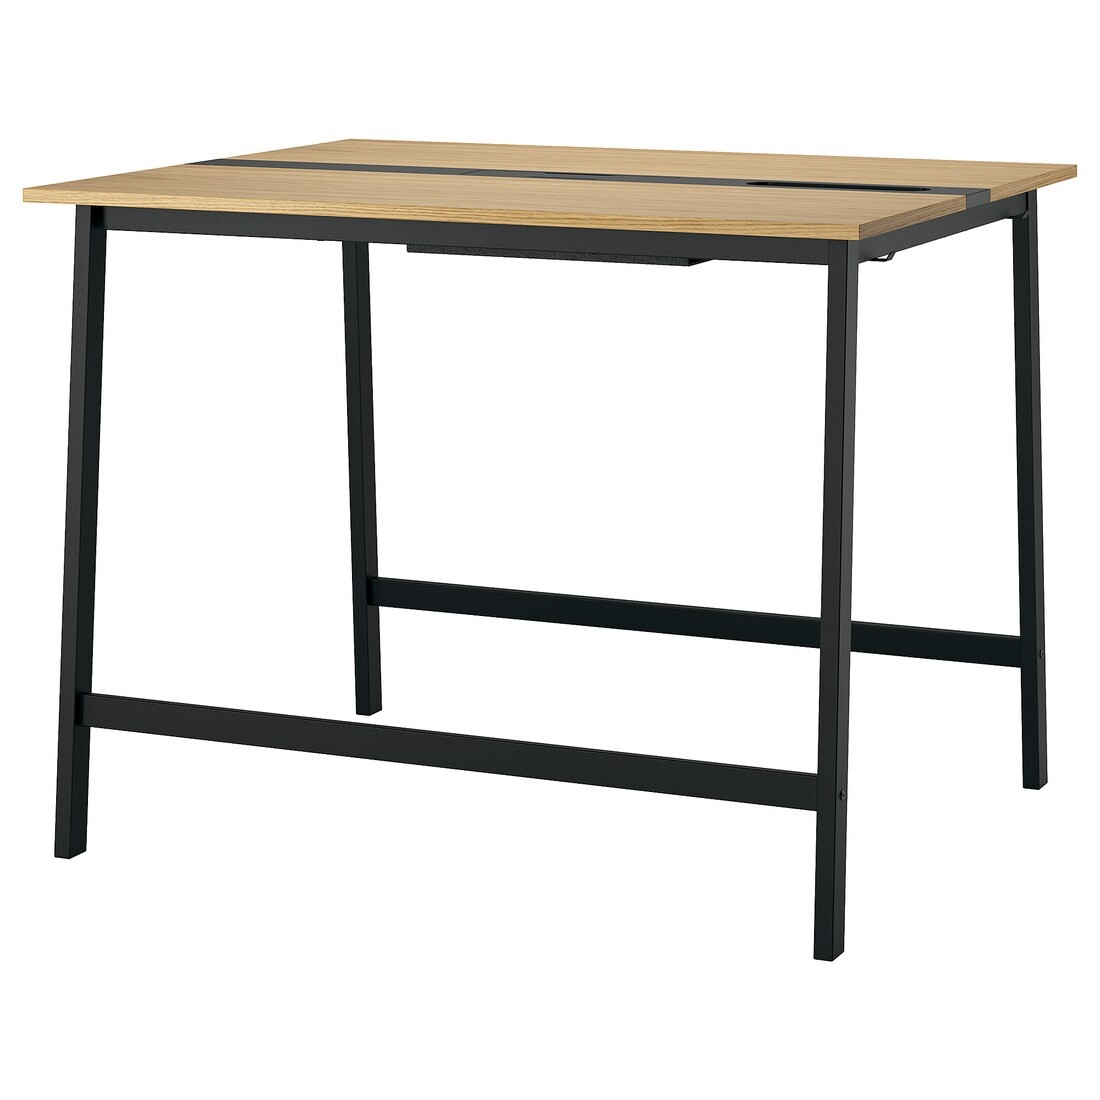 MITTZON стіл для конференцій, дубовий шпон / чорний, 140x108x105 см